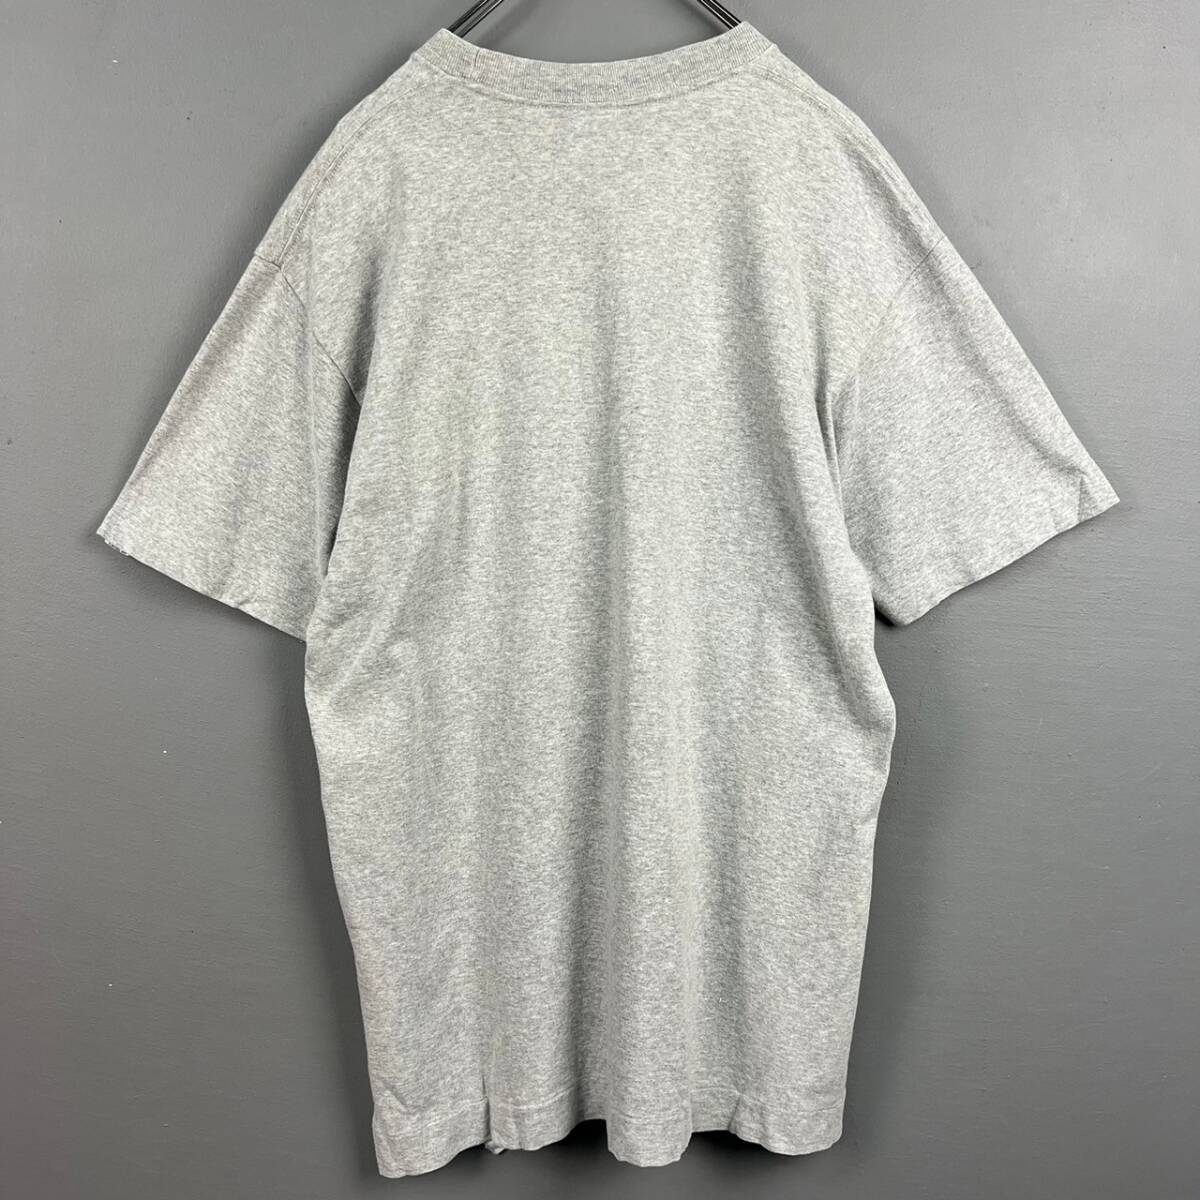 Wm097 日本製 BABY MILO APE アベイシングエイプ 半袖 Tシャツ グラフィックT ロゴT キャラT 袖裾シングル グレー メンズ_画像2